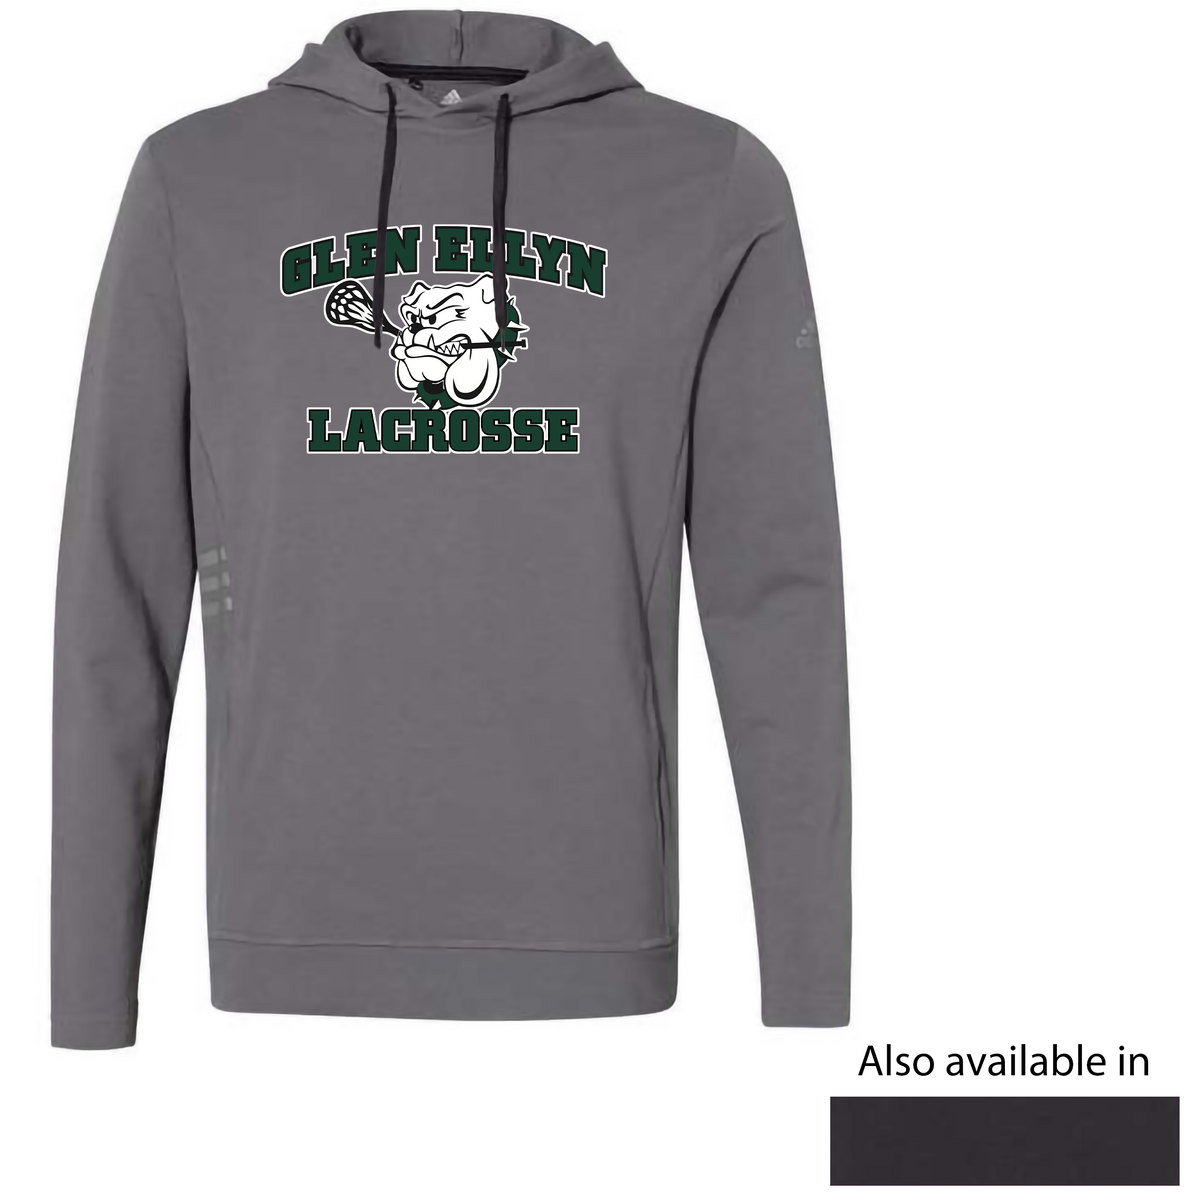 Glen Ellyn Bulldogs Lacrosse Adidas Sweatshirt